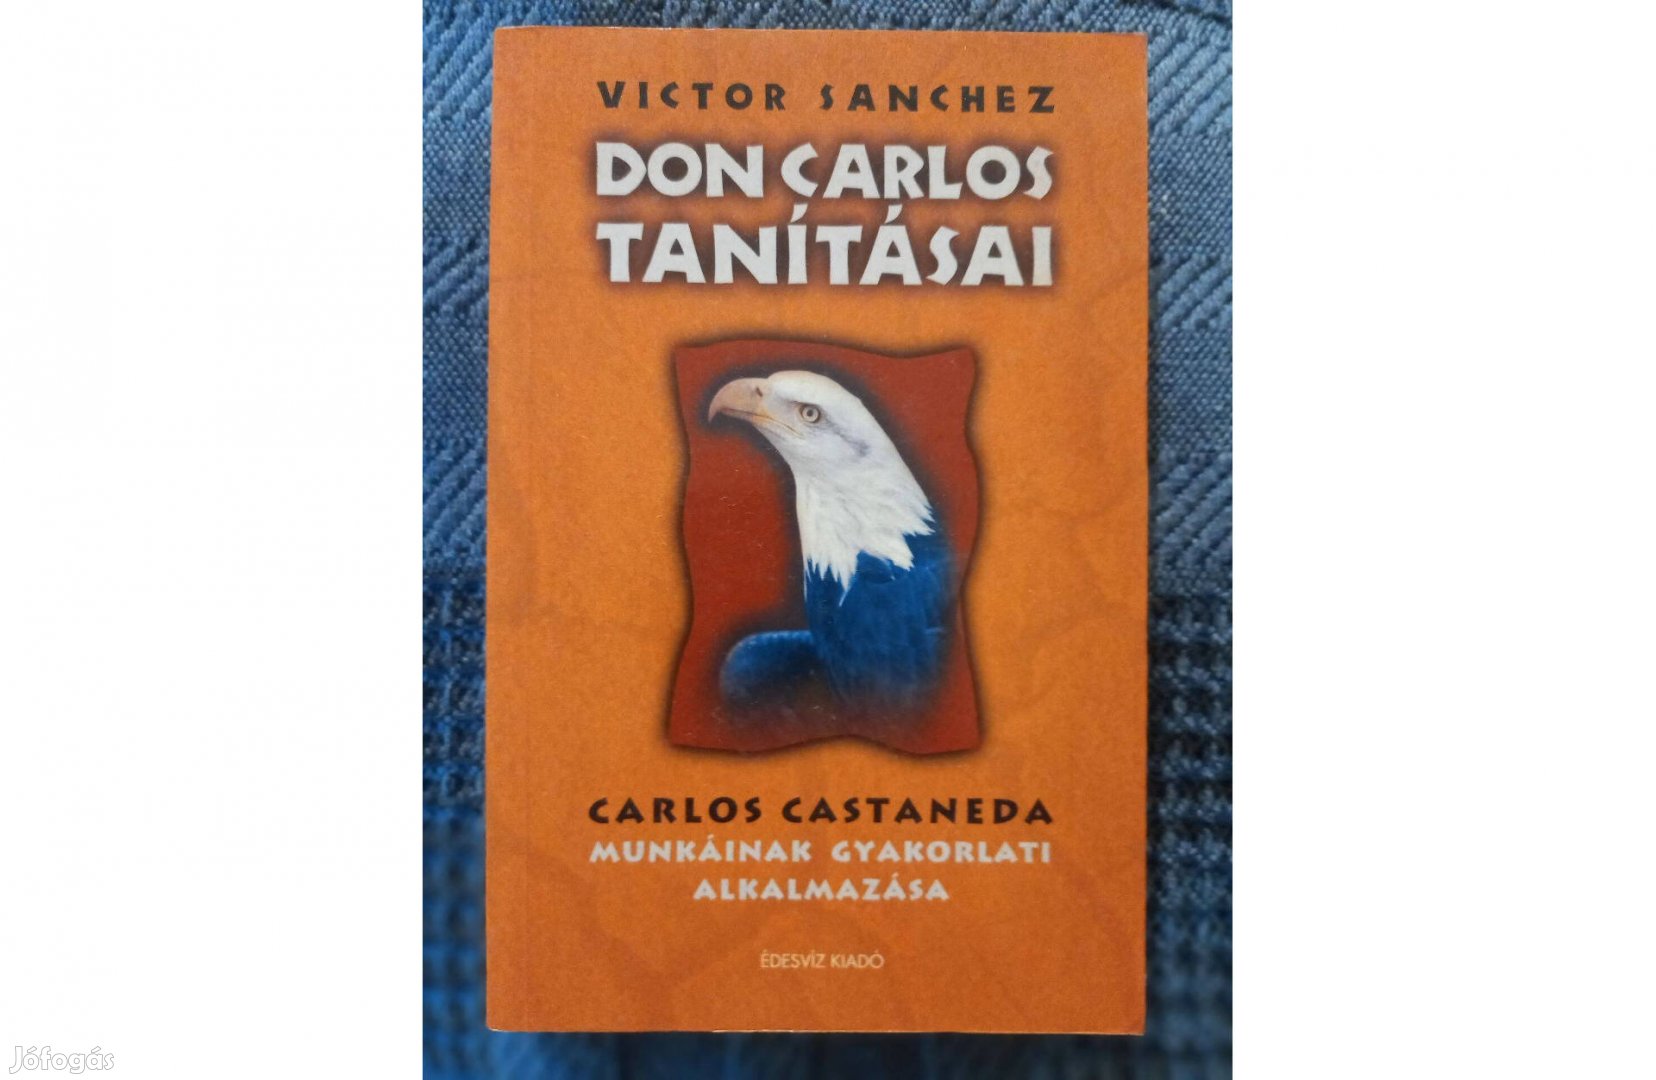 Victor Sanchez: Don Carlos tanításai. c. könyv eladó